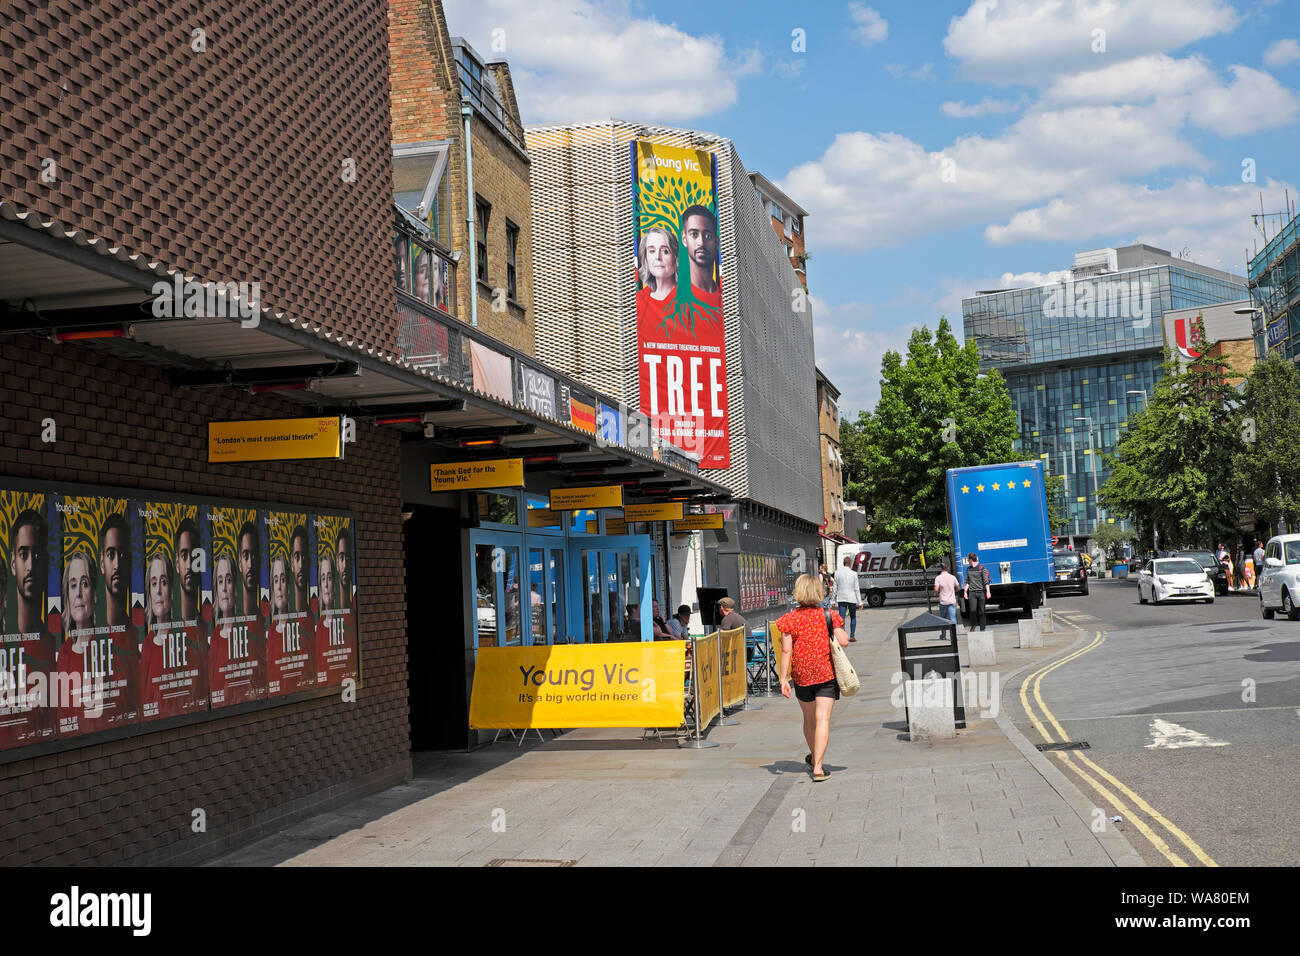 Vue extérieure du Young Vic Theatre en juillet 2019 Lambeth avec billboard affiche de l'arbre à jouer dans le sud de Londres SE1 England UK KATHY DEWITT Banque D'Images